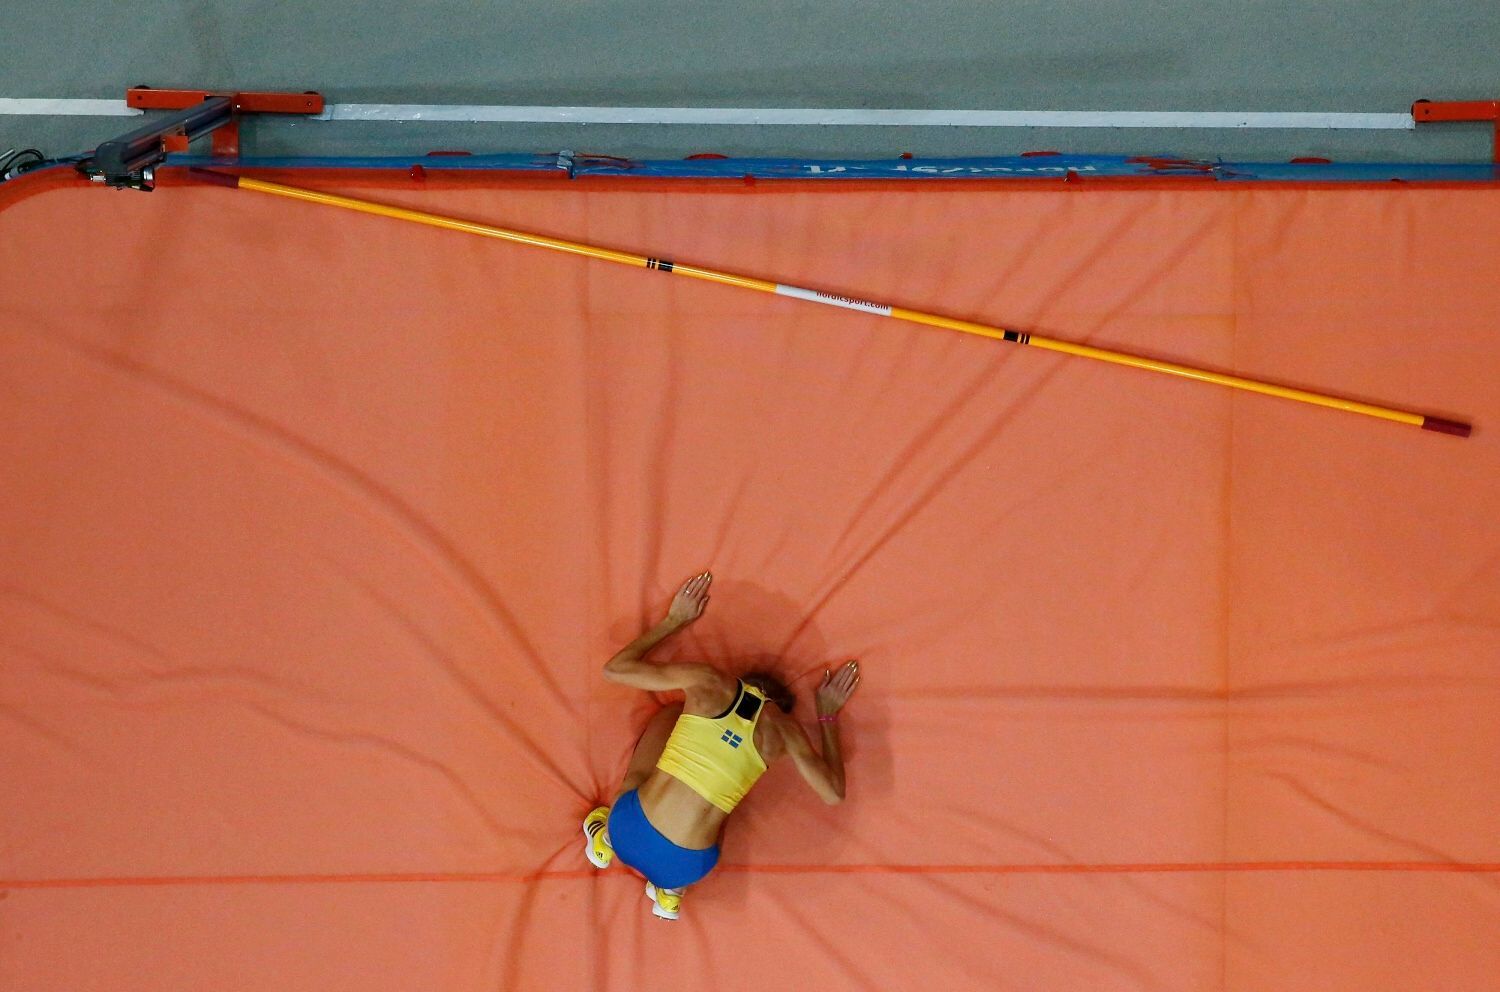 ME v halové atletice 2013, skok vysoký: Ebba Jungmarková